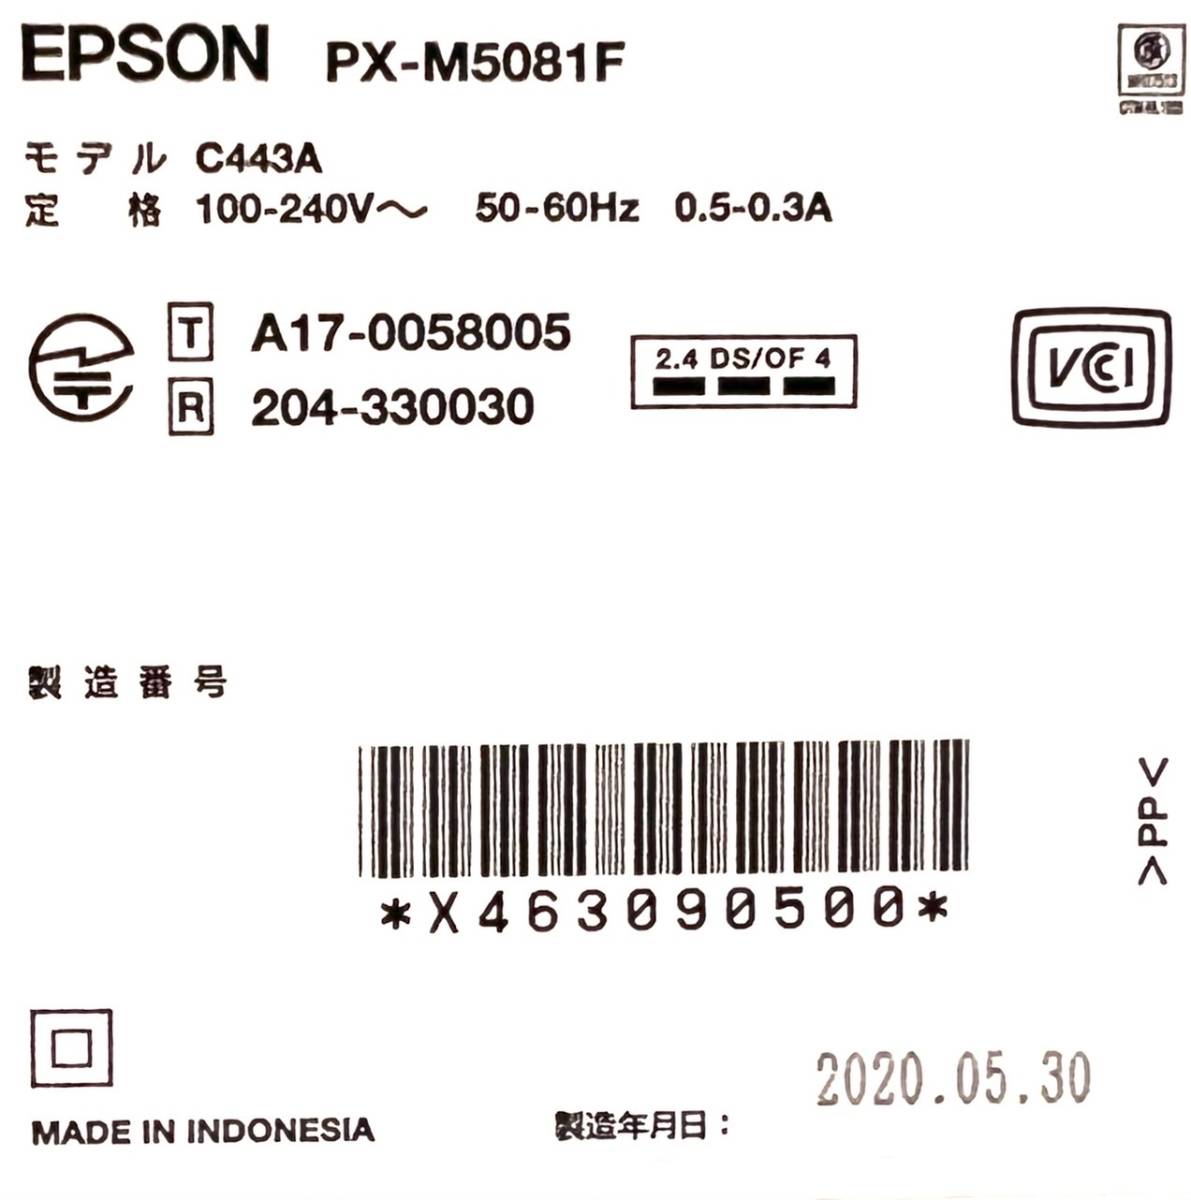 ☆ 送料無料 極美品 EPSON エプソン A3 ビジネスインクジェット FAX複合機 PX-M5081F a3 インクジェット ビジネス向け fax付 即日発送！